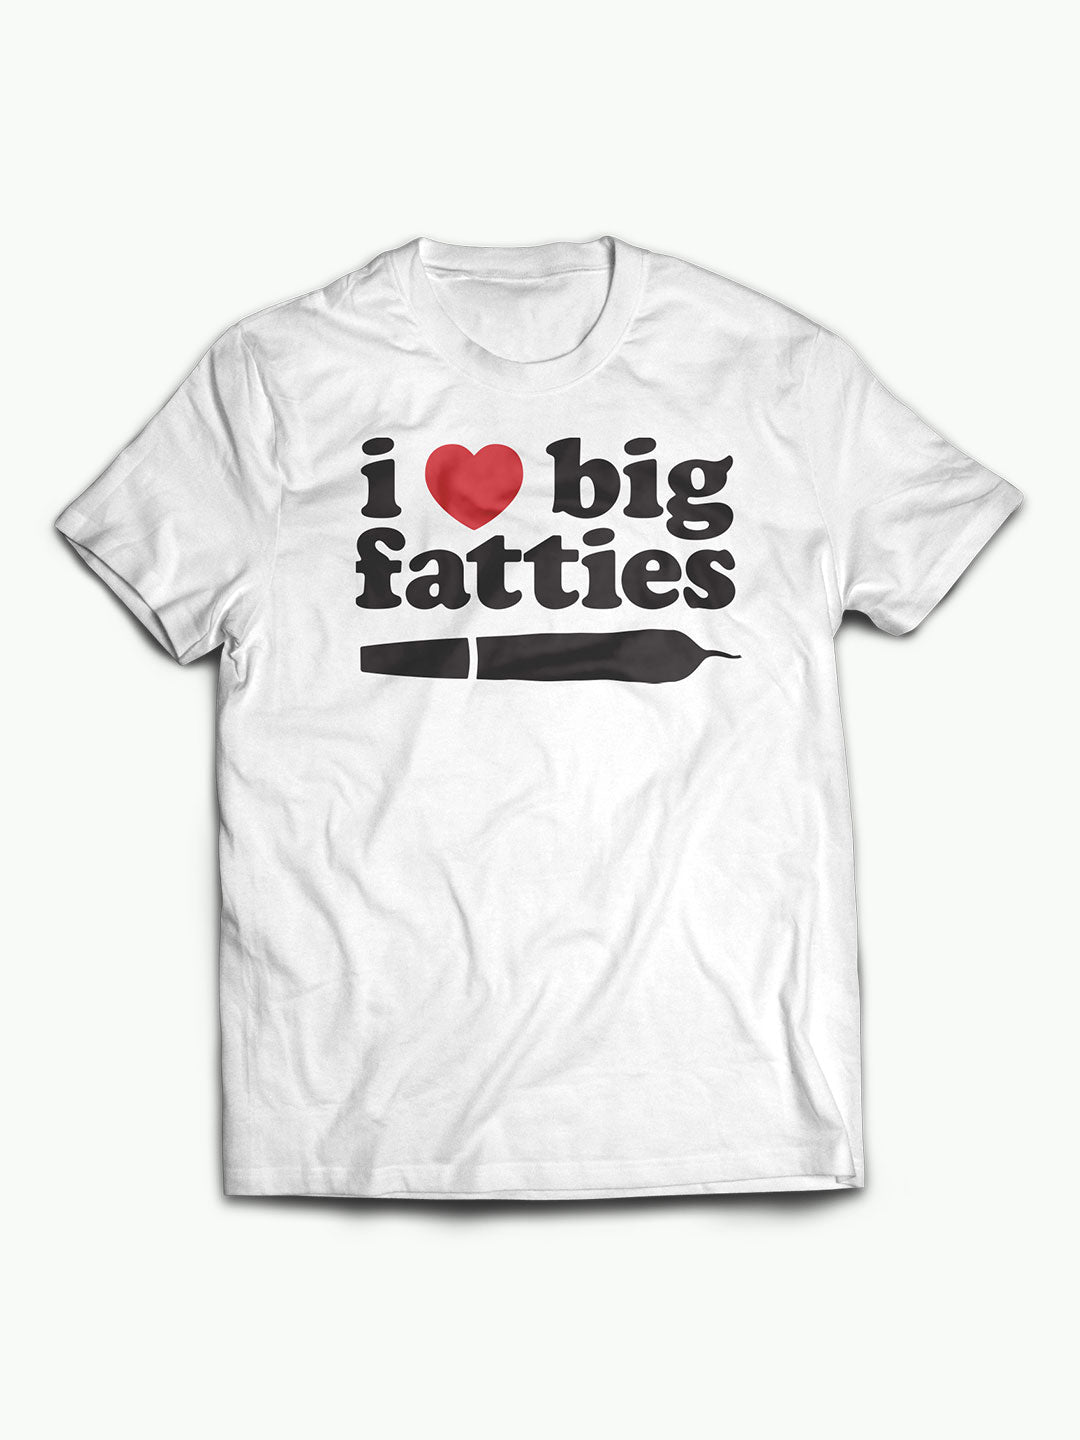 I <3 Big Fatties Tee